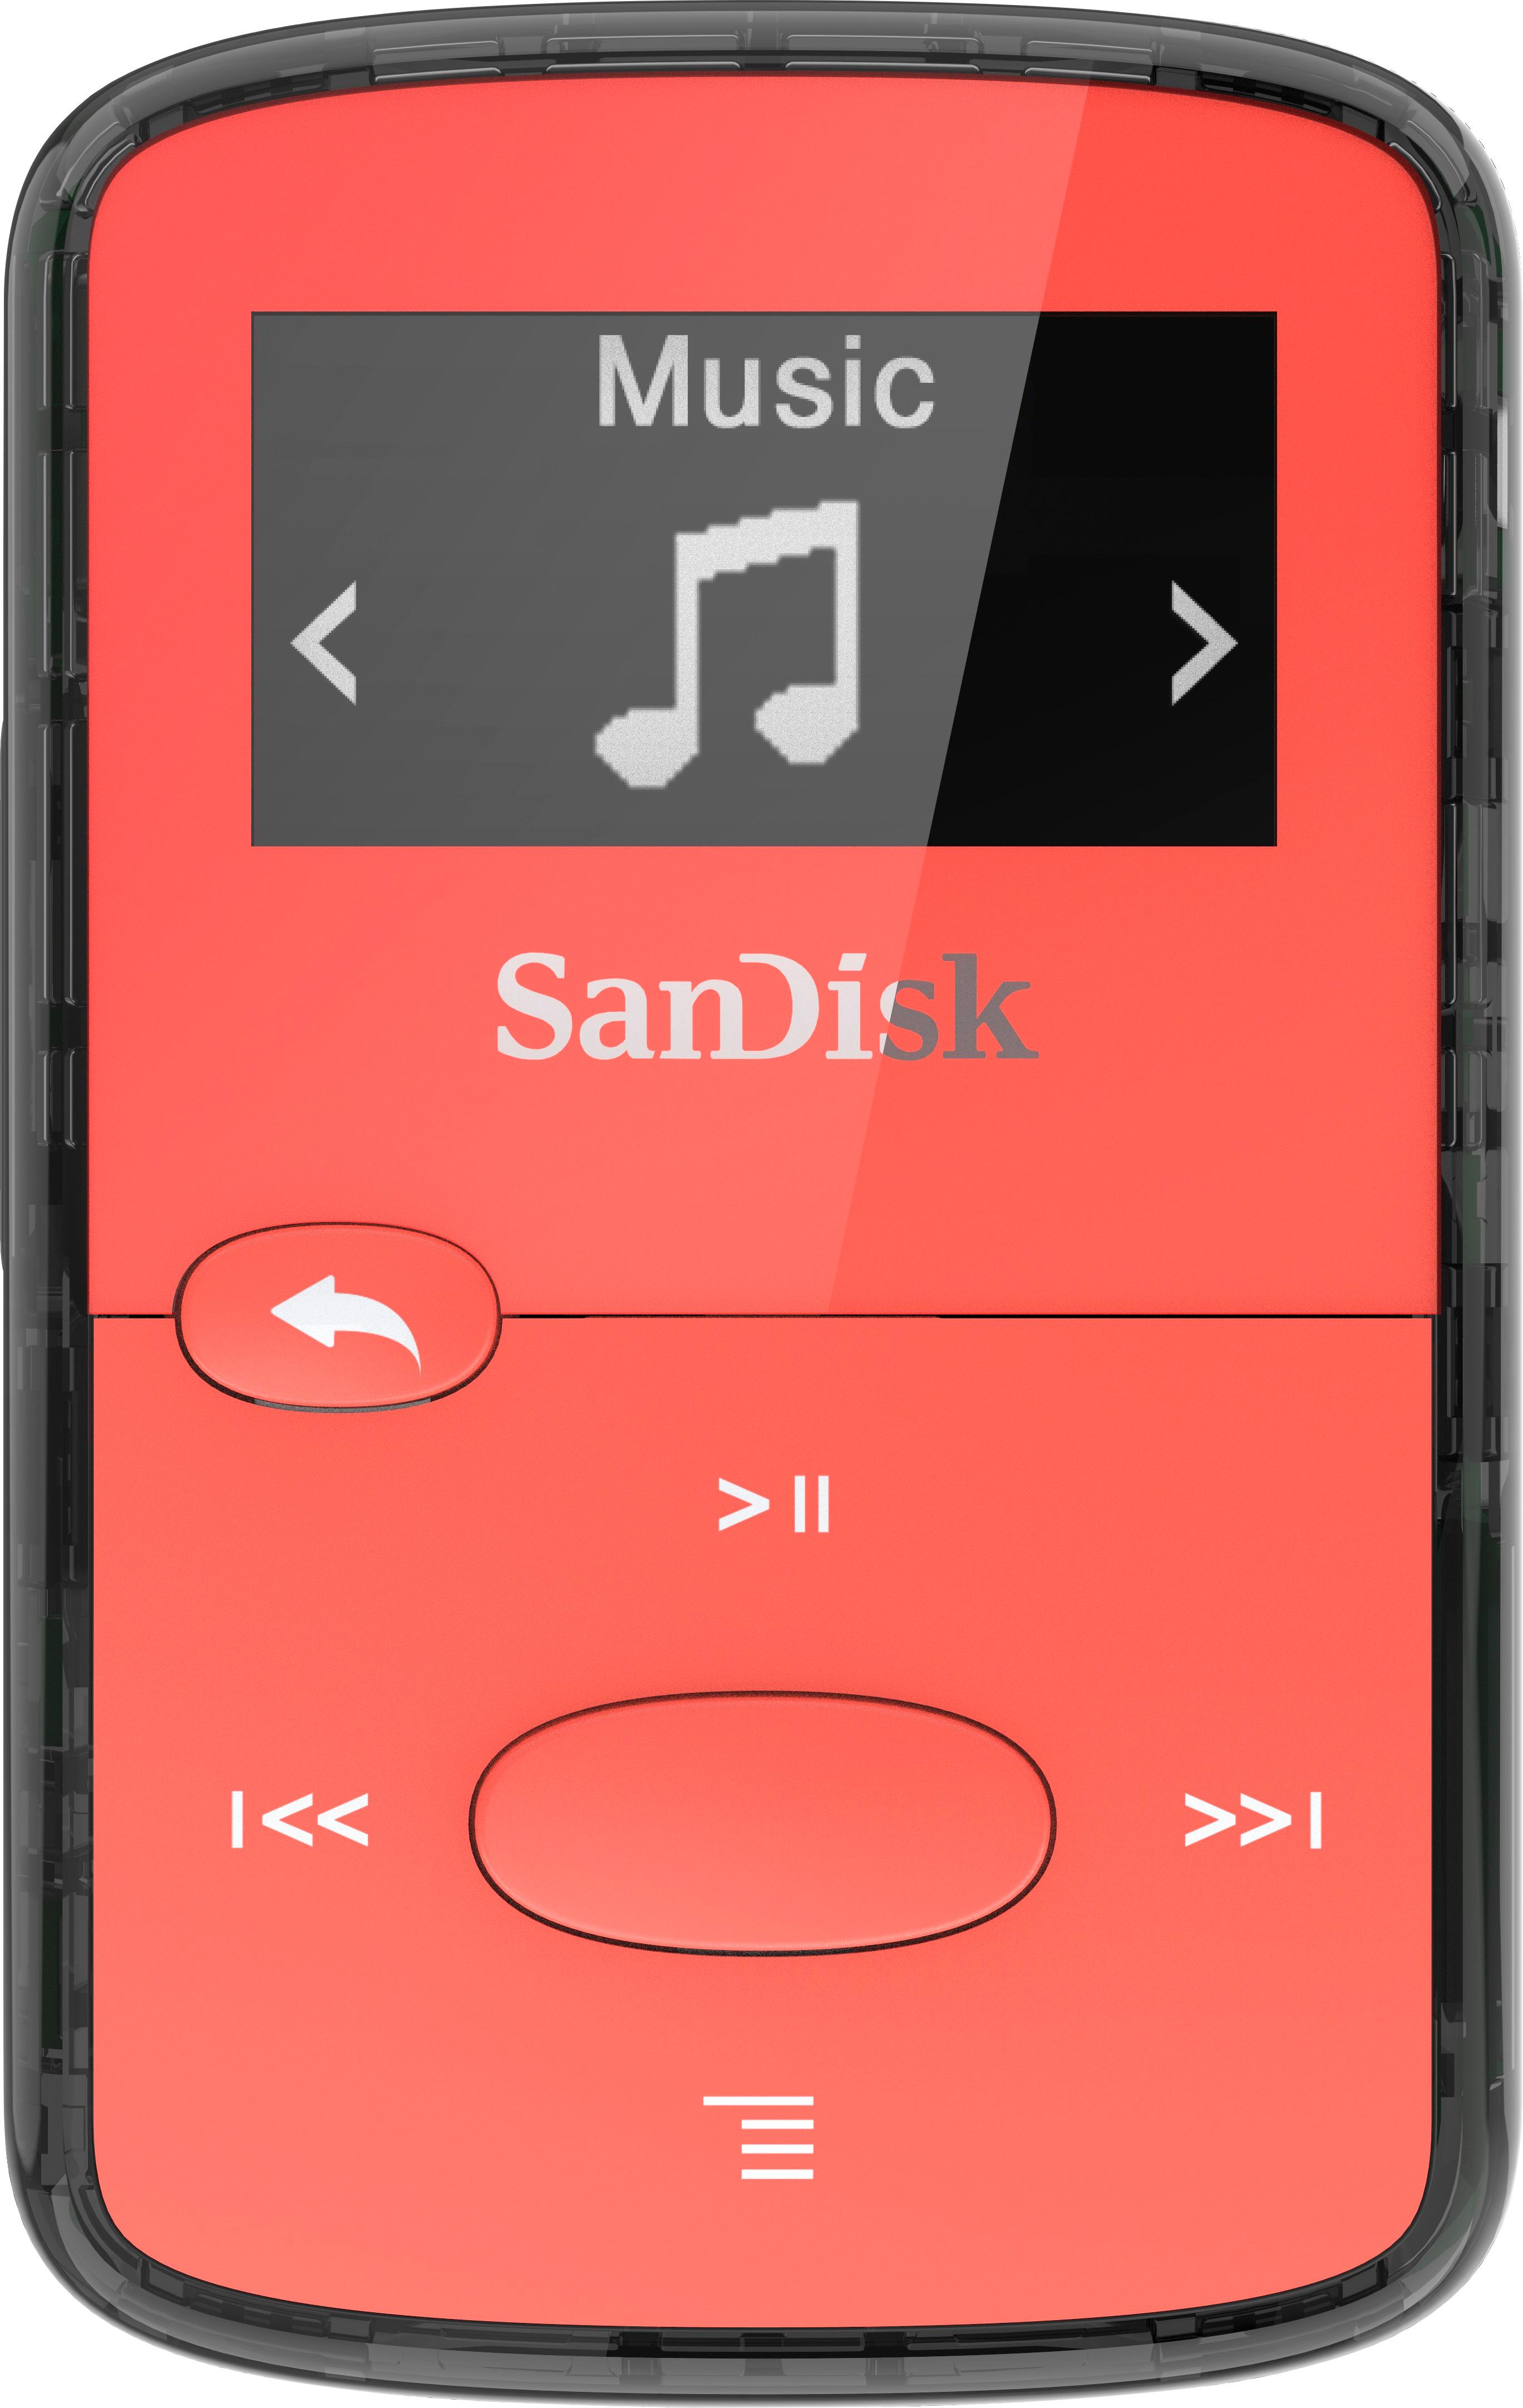 Havn aktivering Uartig Best Buy: SanDisk Clip Jam 8GB* MP3 Player Red & Black 6085502